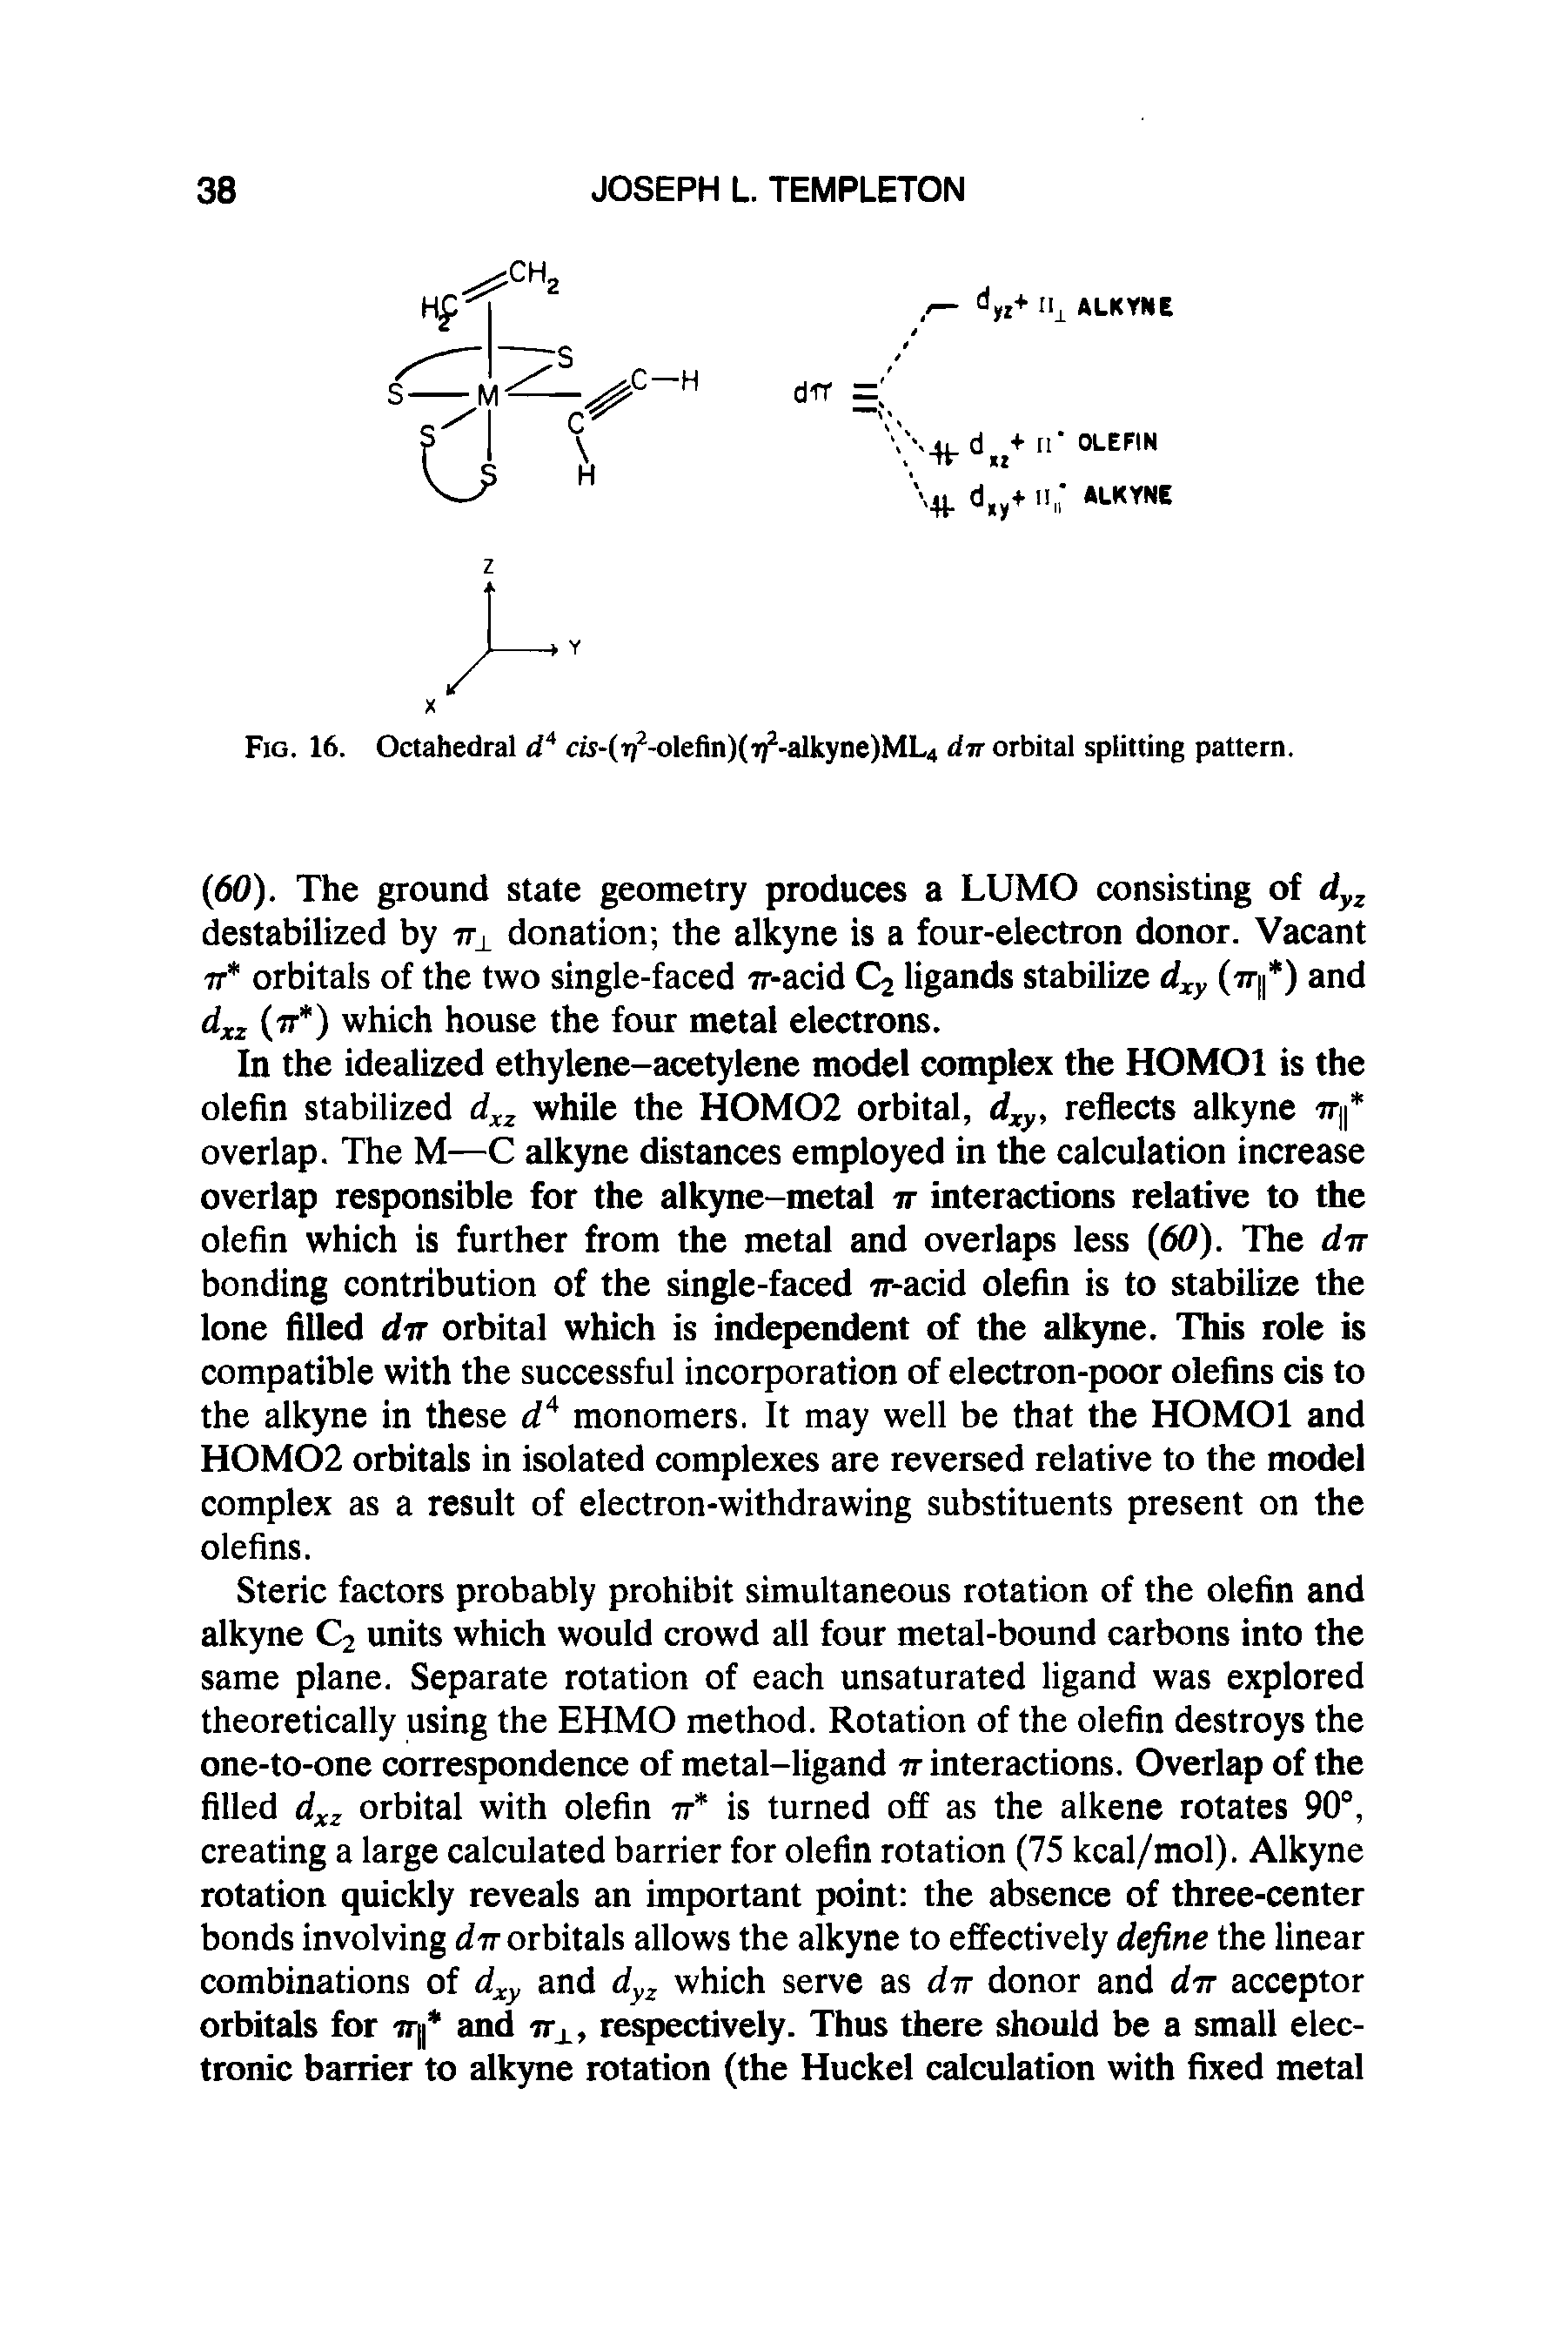 Fig. 16. Octahedral dA cw-(r)2-olefin)(i72-alkyne)ML4 dir orbital splitting pattern.